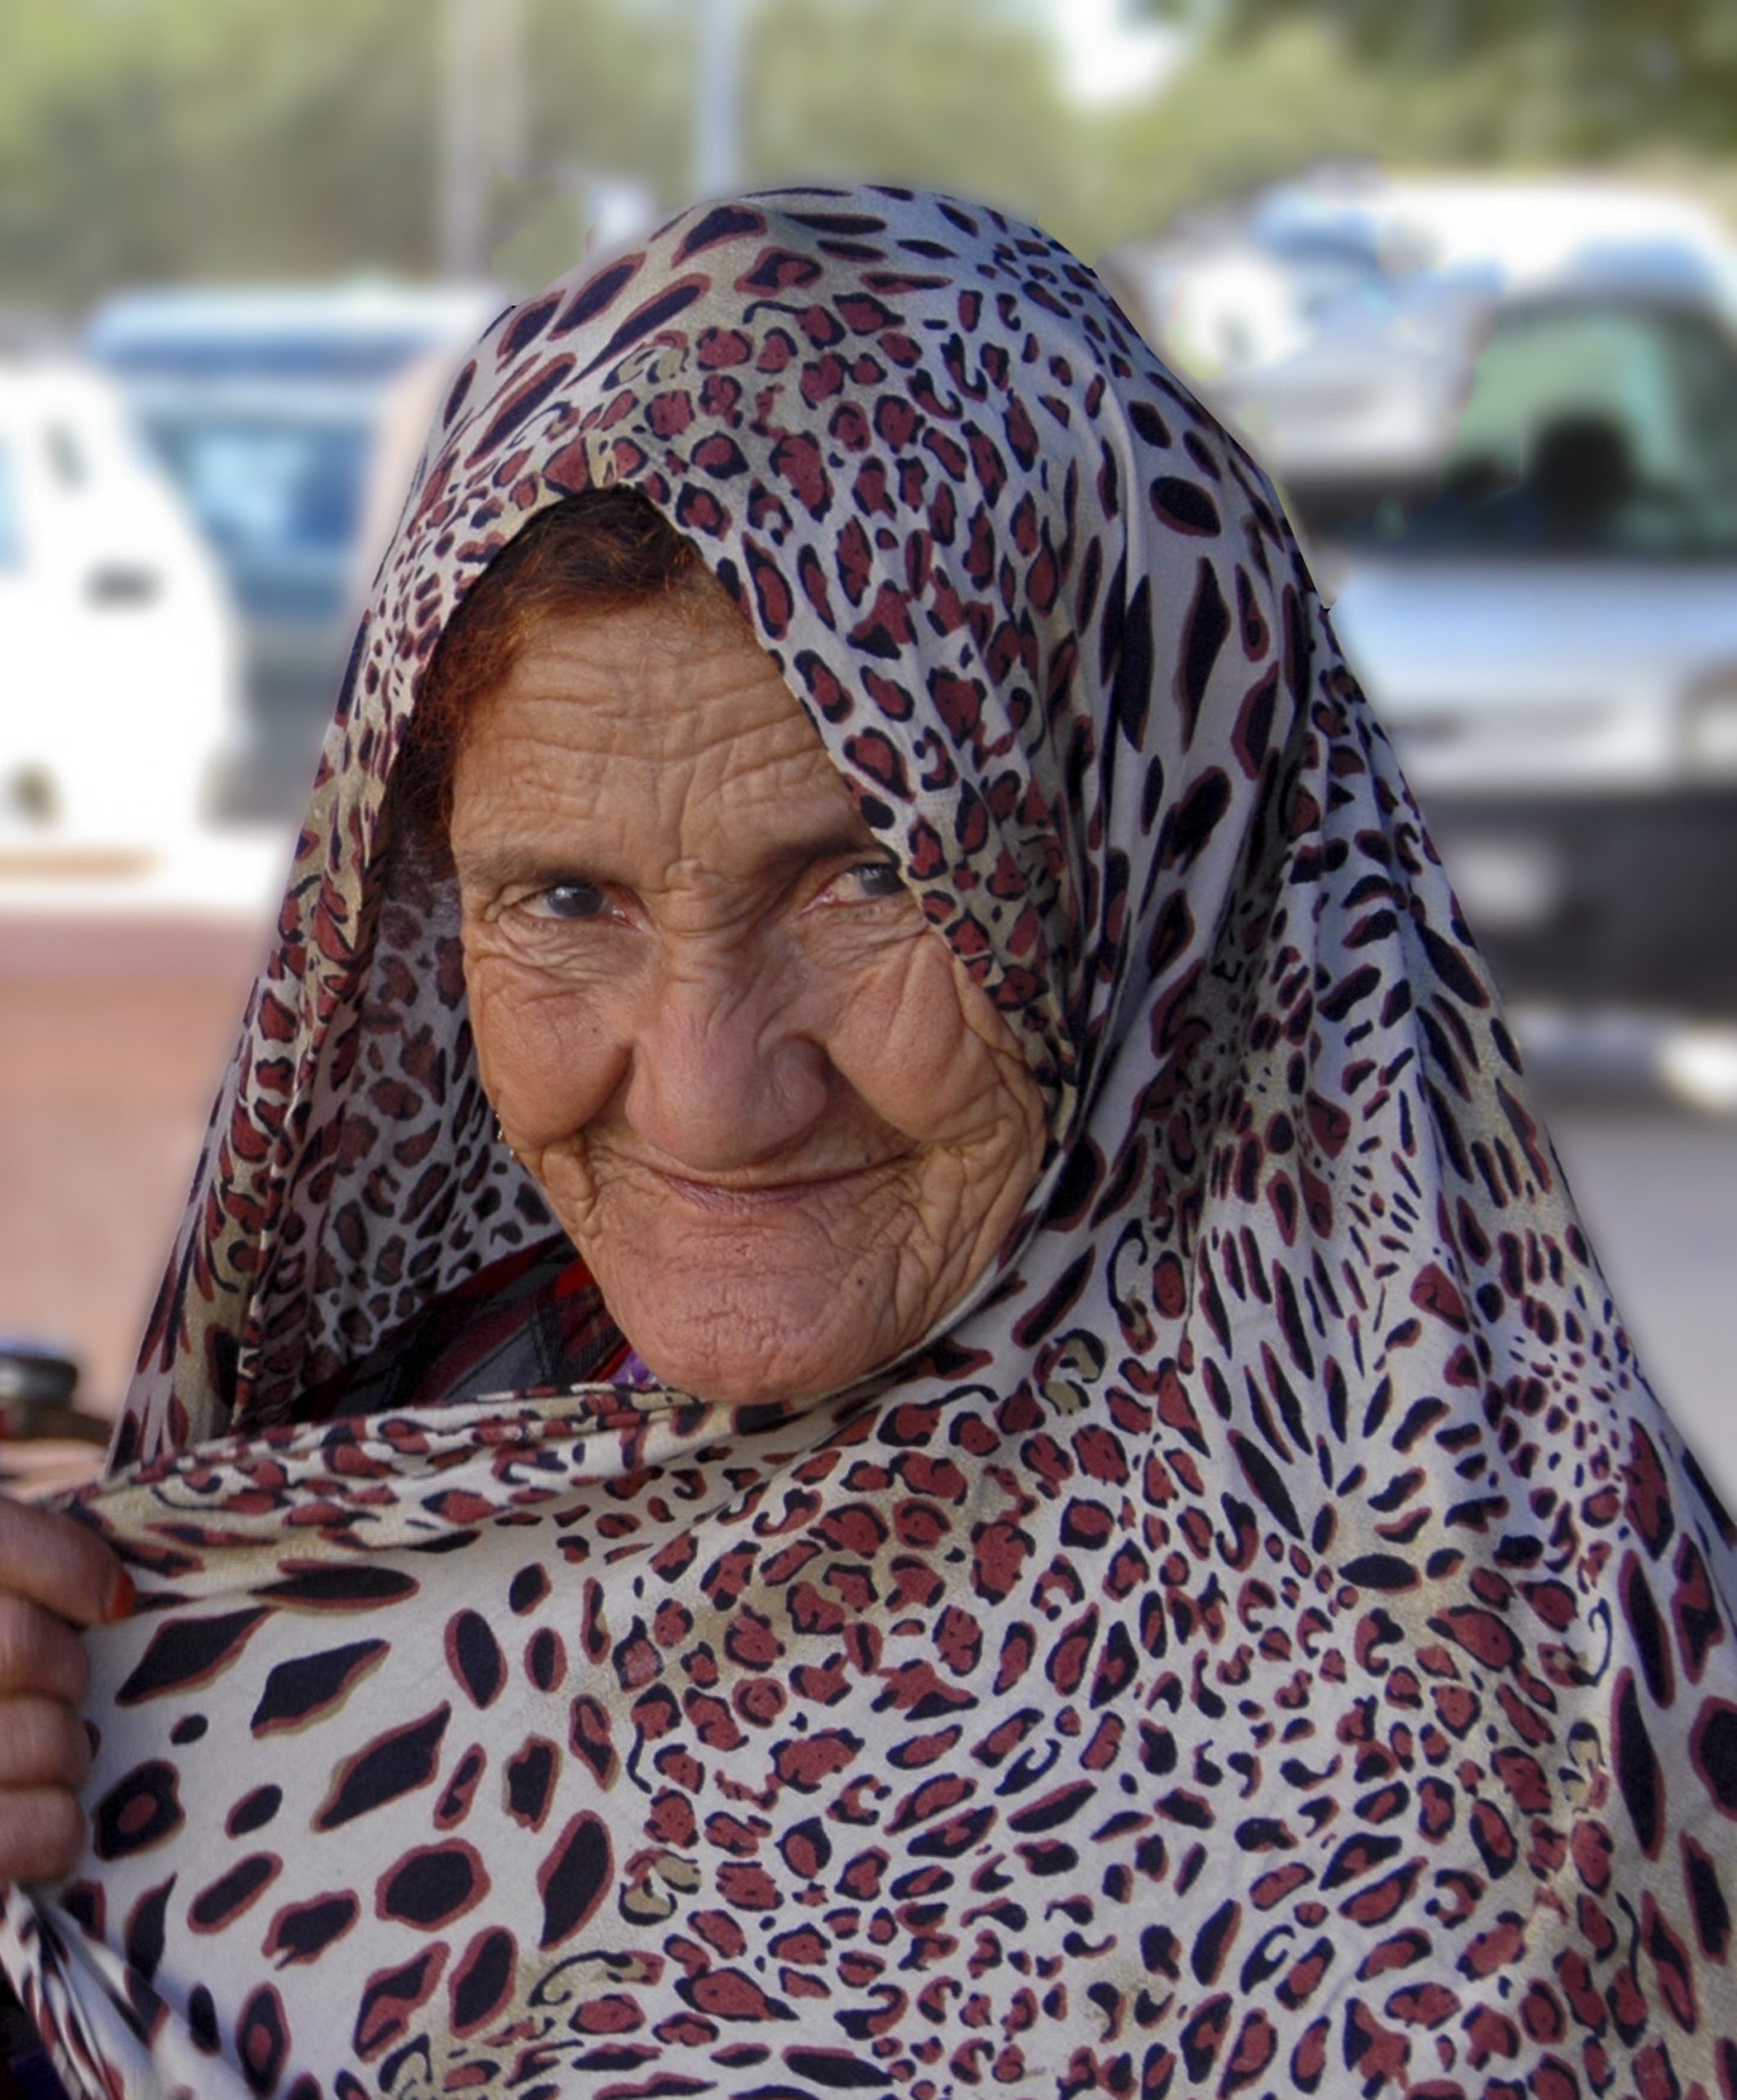 An elderly woman wearing a leopard print headscarf smiles